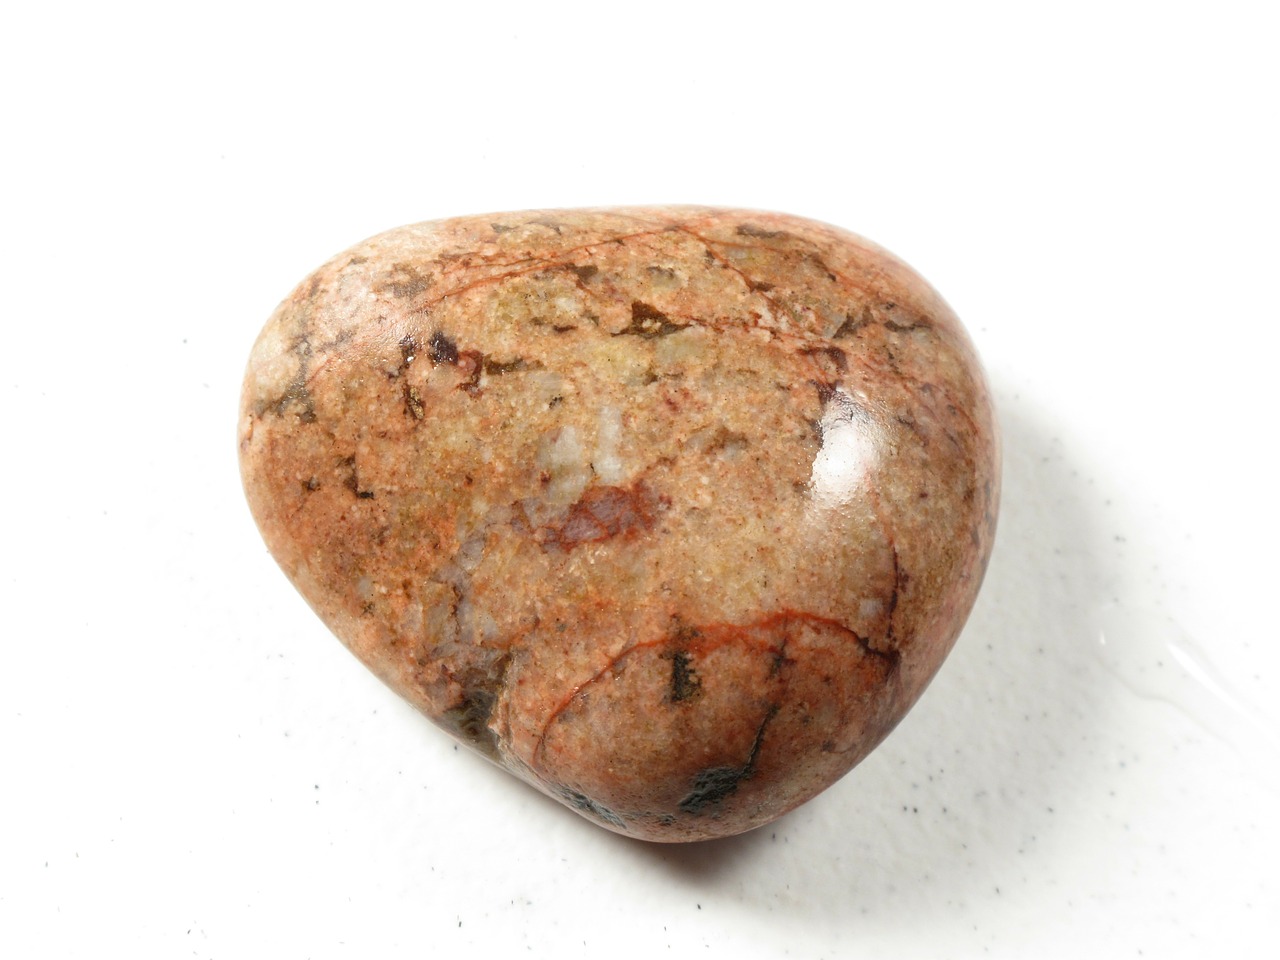 rock pebble heart-shaped rock free photo